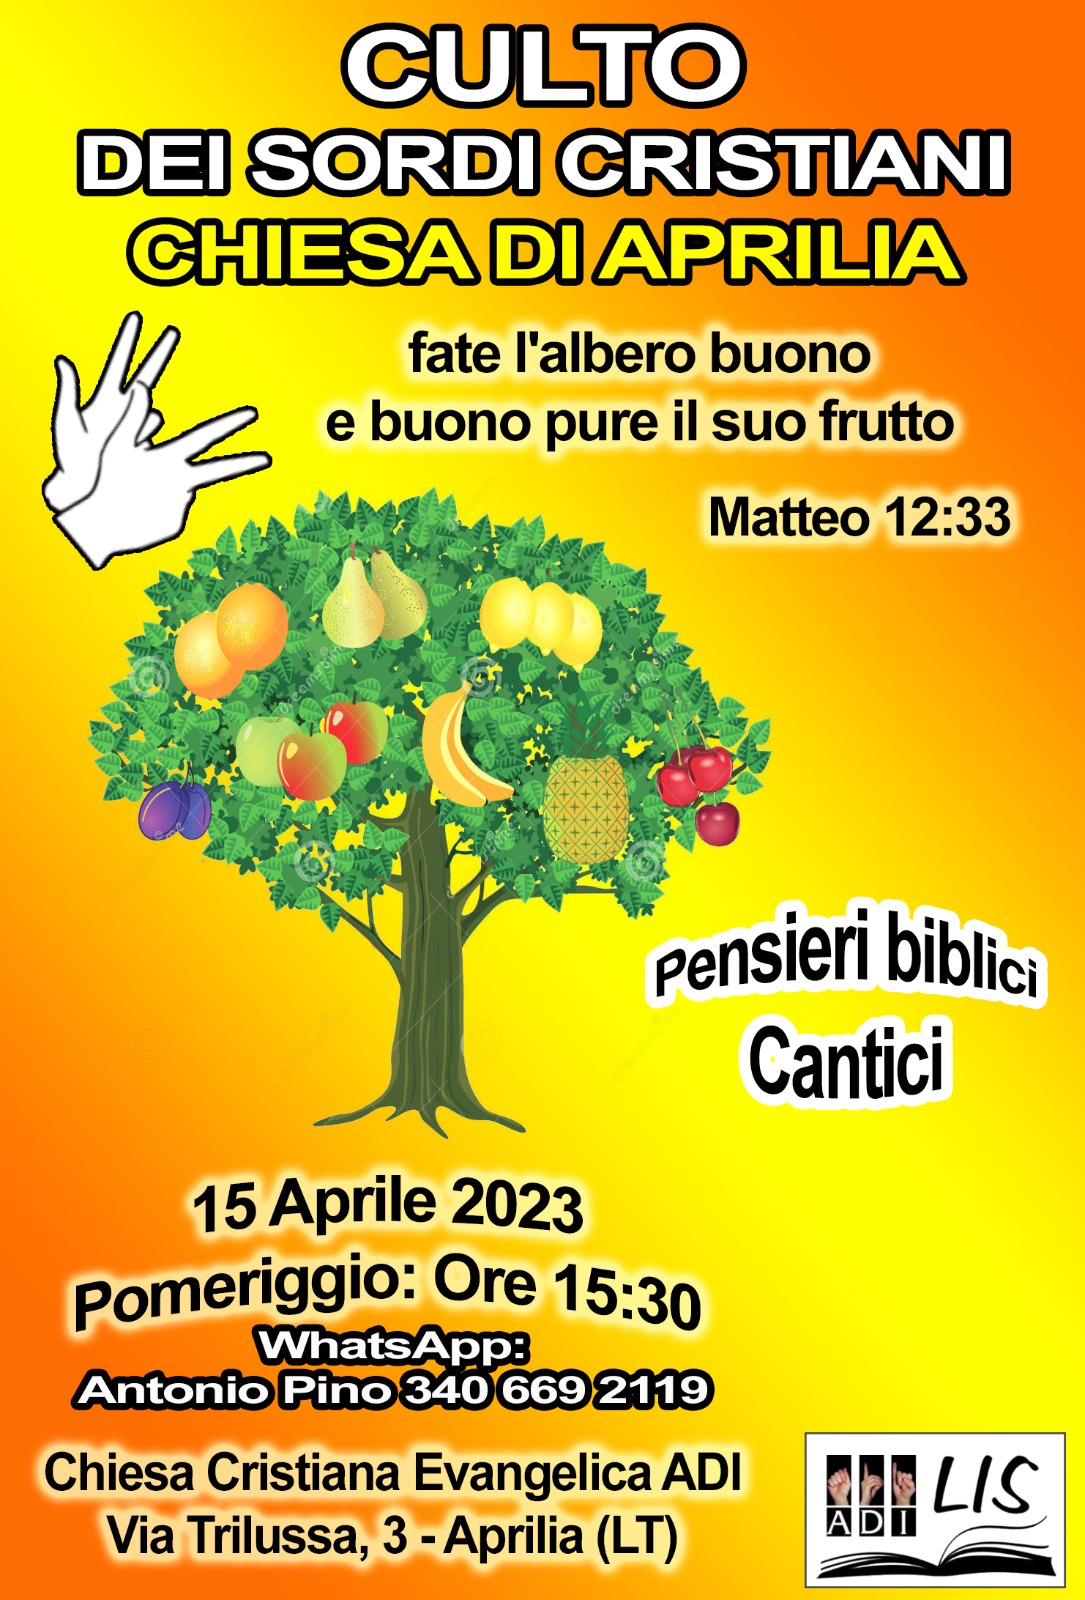 Culto Sordi Cristiani ad Aprilia (Latina) - Sabato 15 Aprile 2023